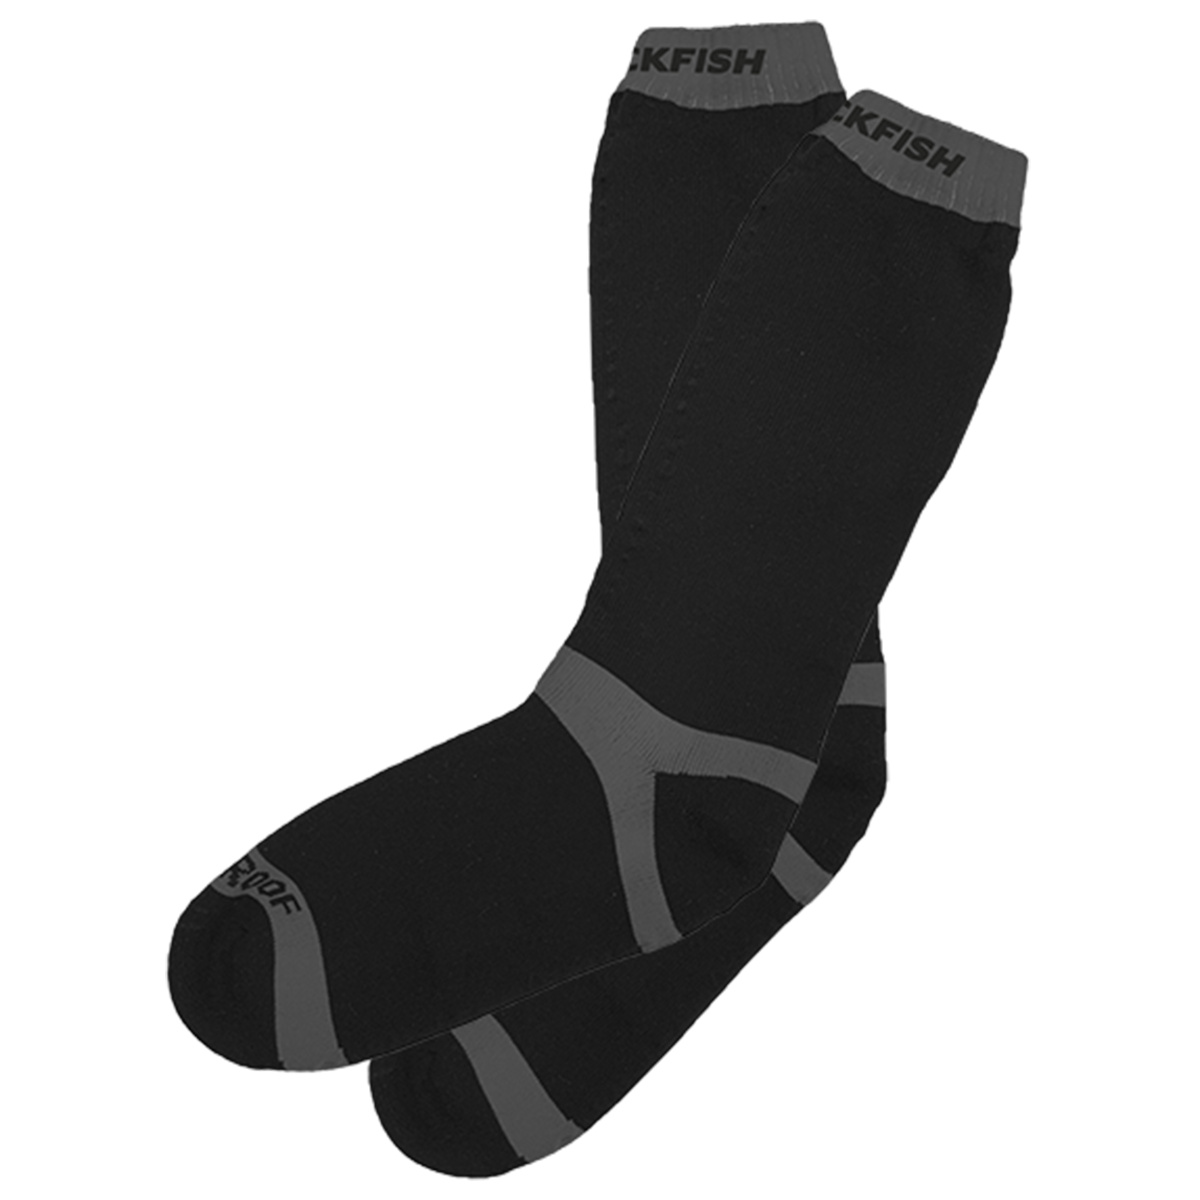 Blackfish Arrid Waterproof Socks